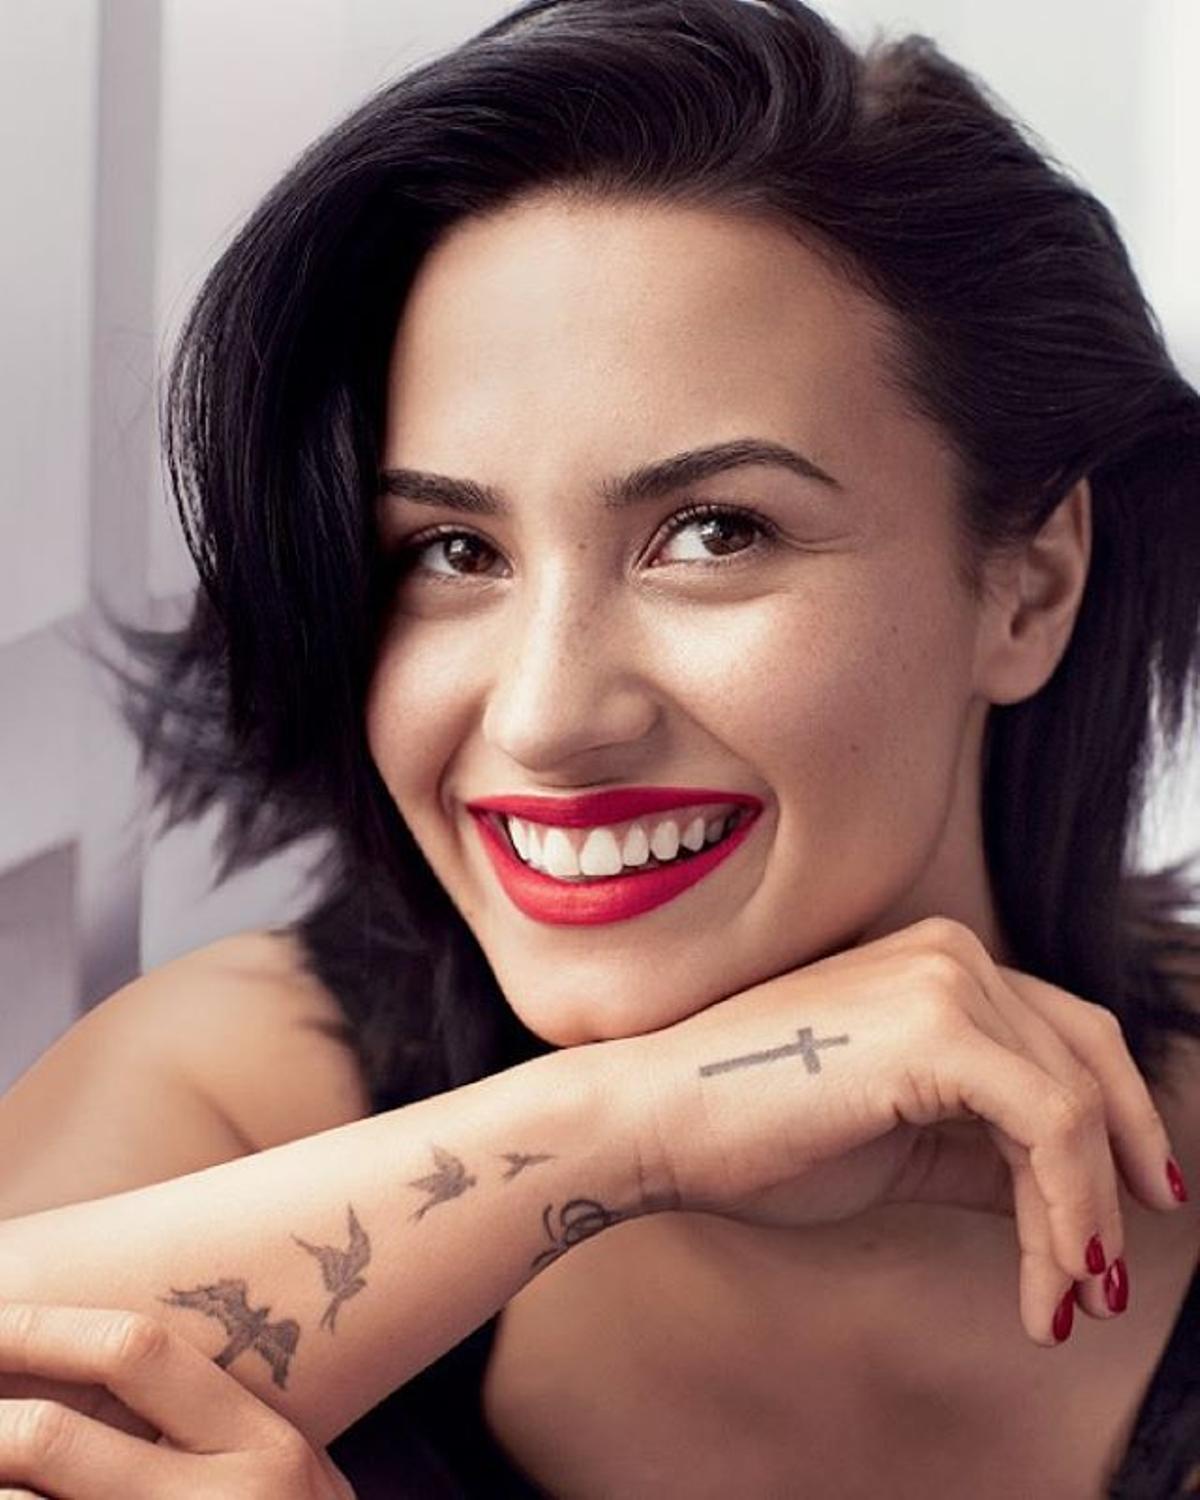 La positiva imagen de Demi Lovato en lencería y sin Photoshop